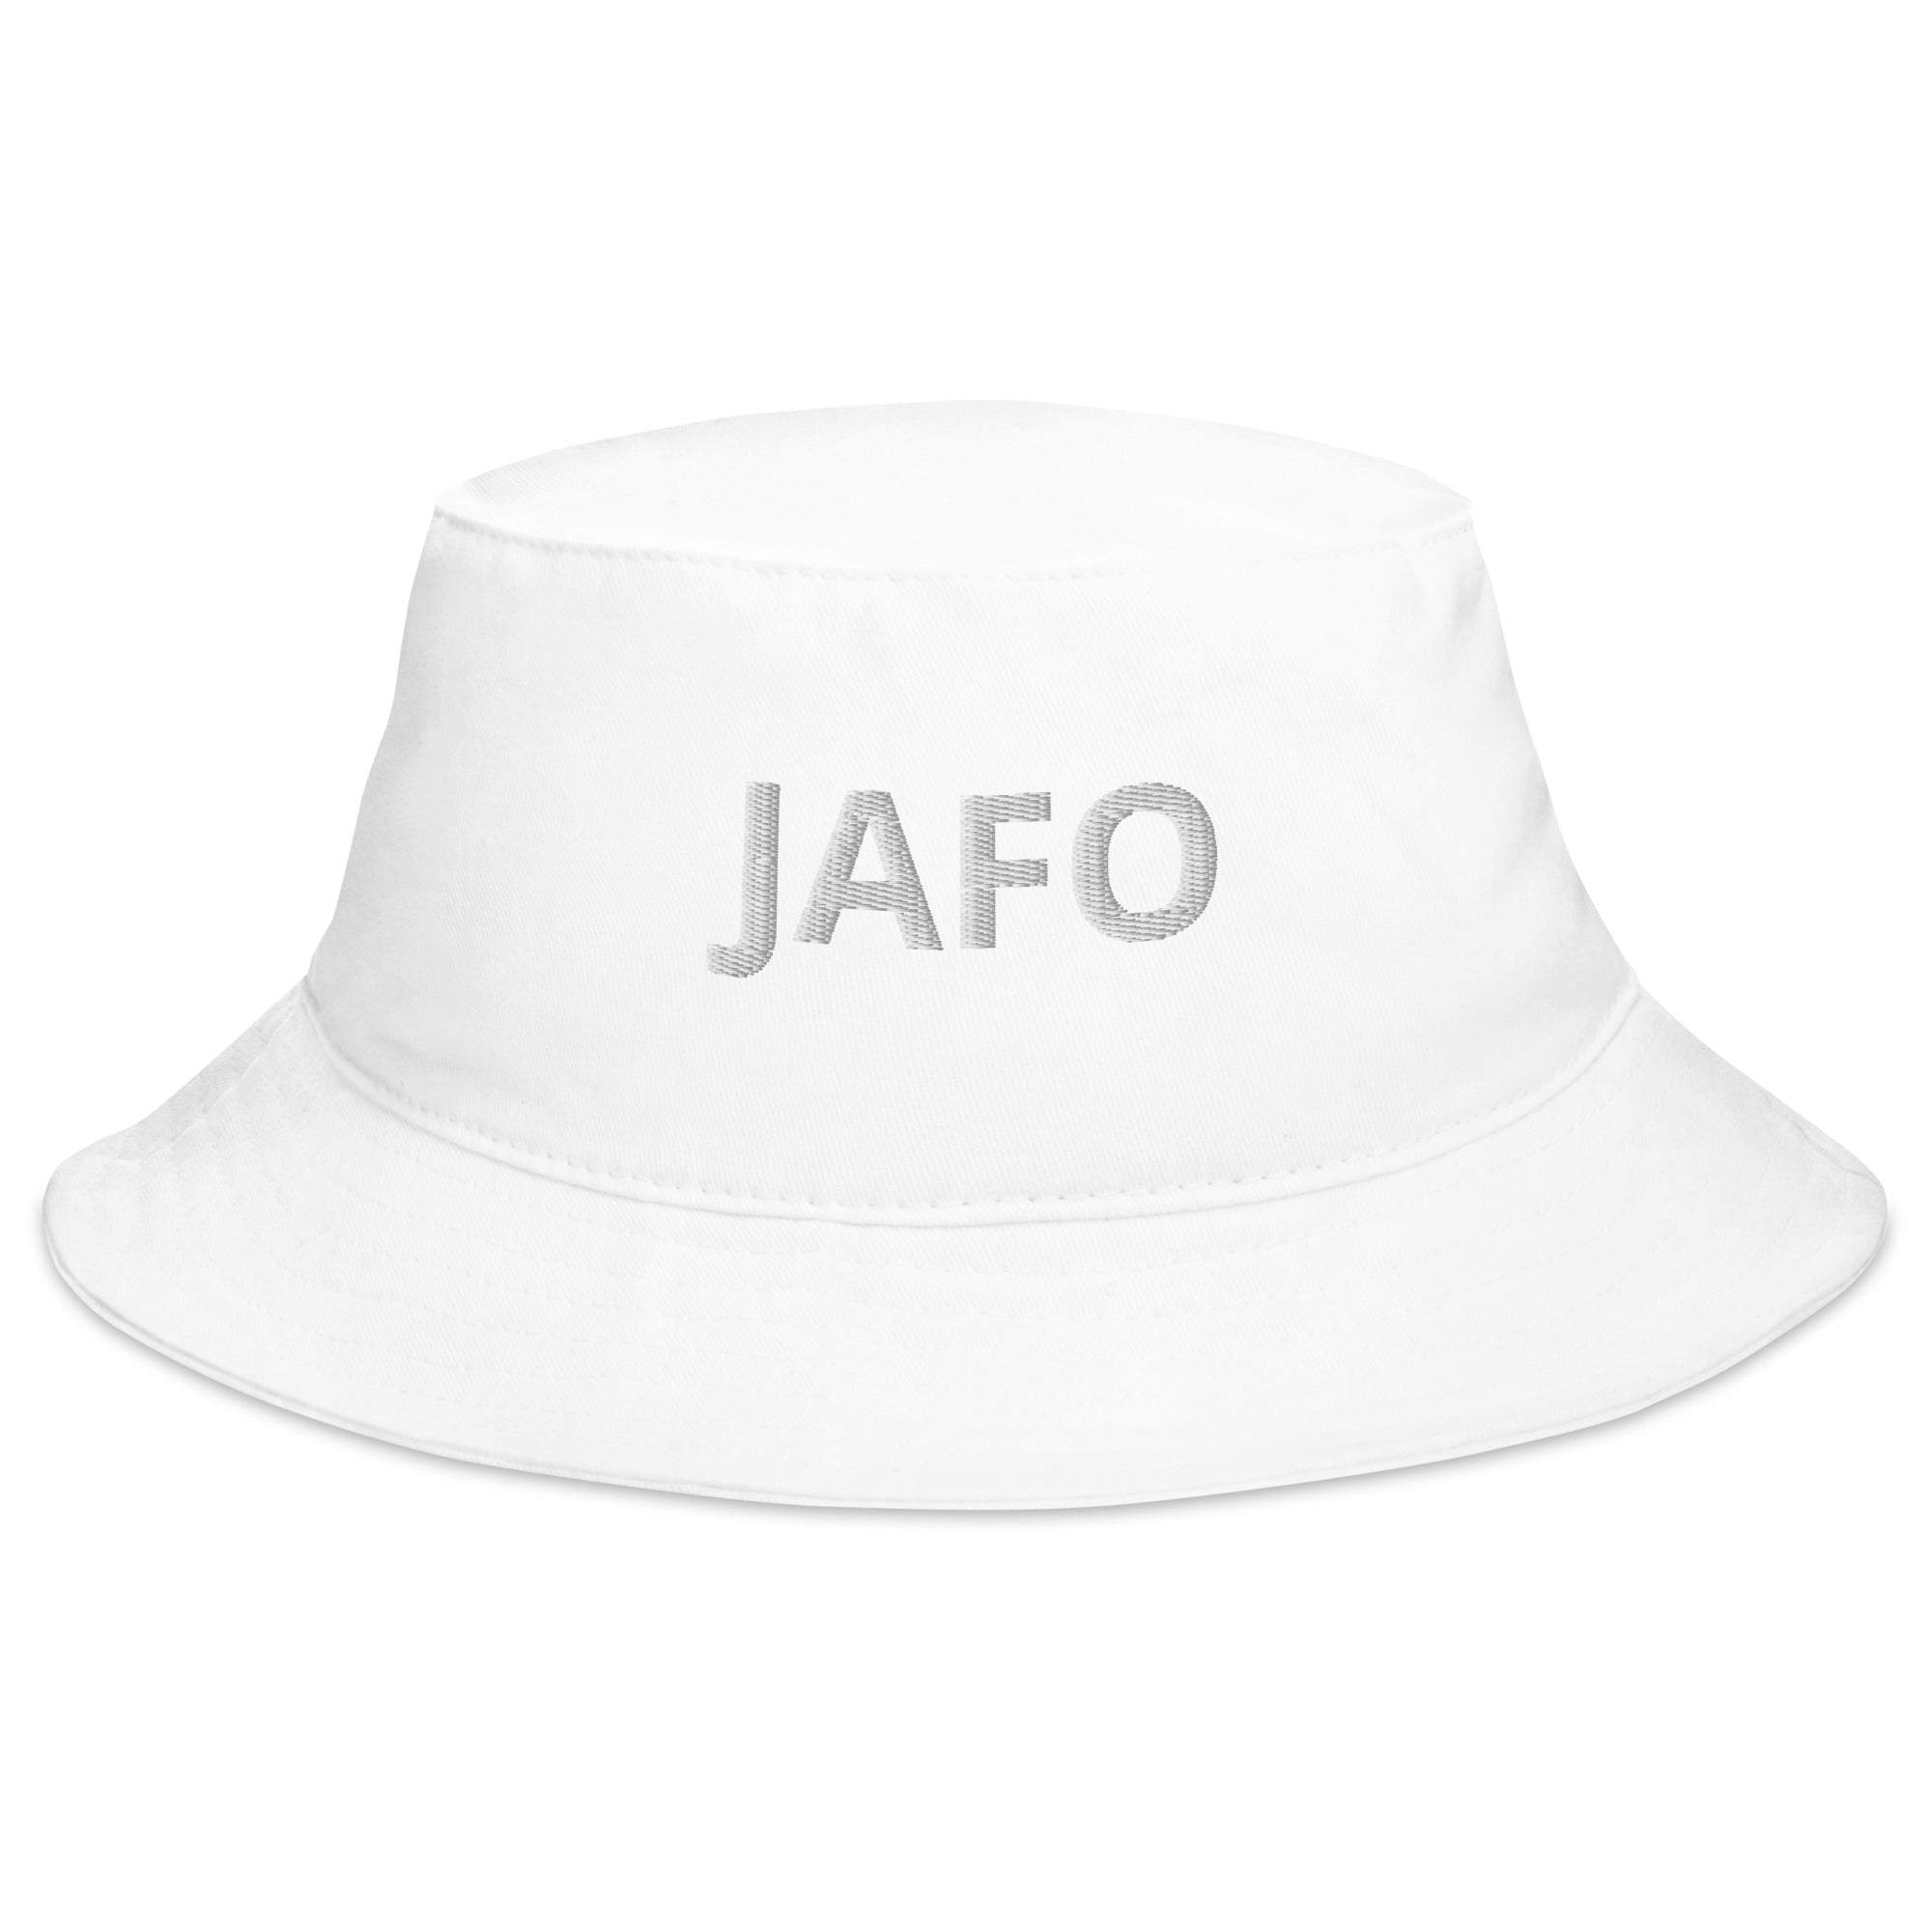 JAFO ~ Bucket Hat